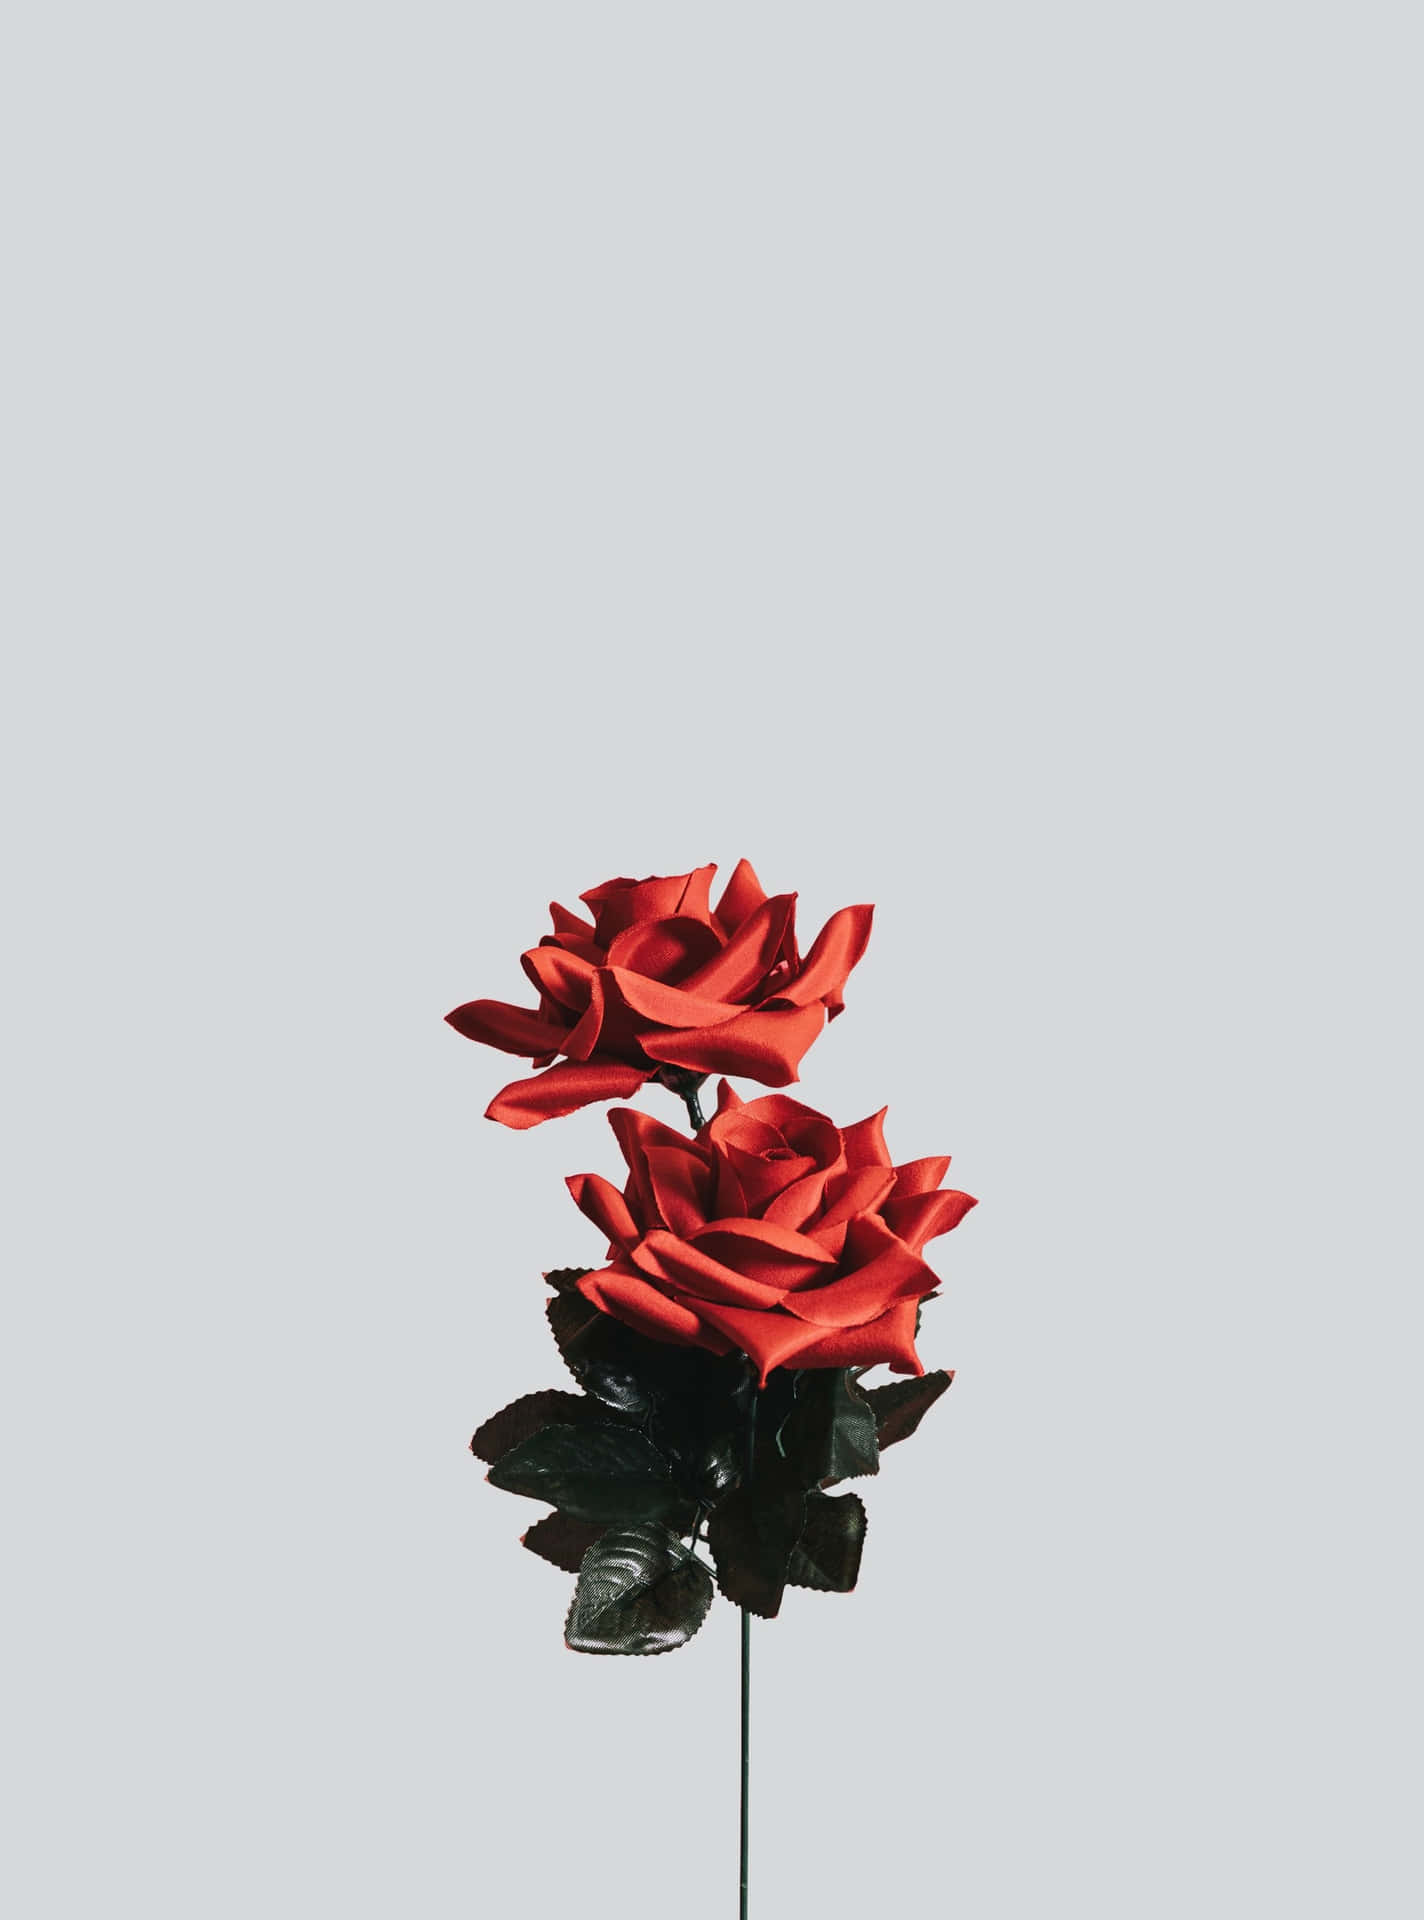 Minimalist Roses Picture